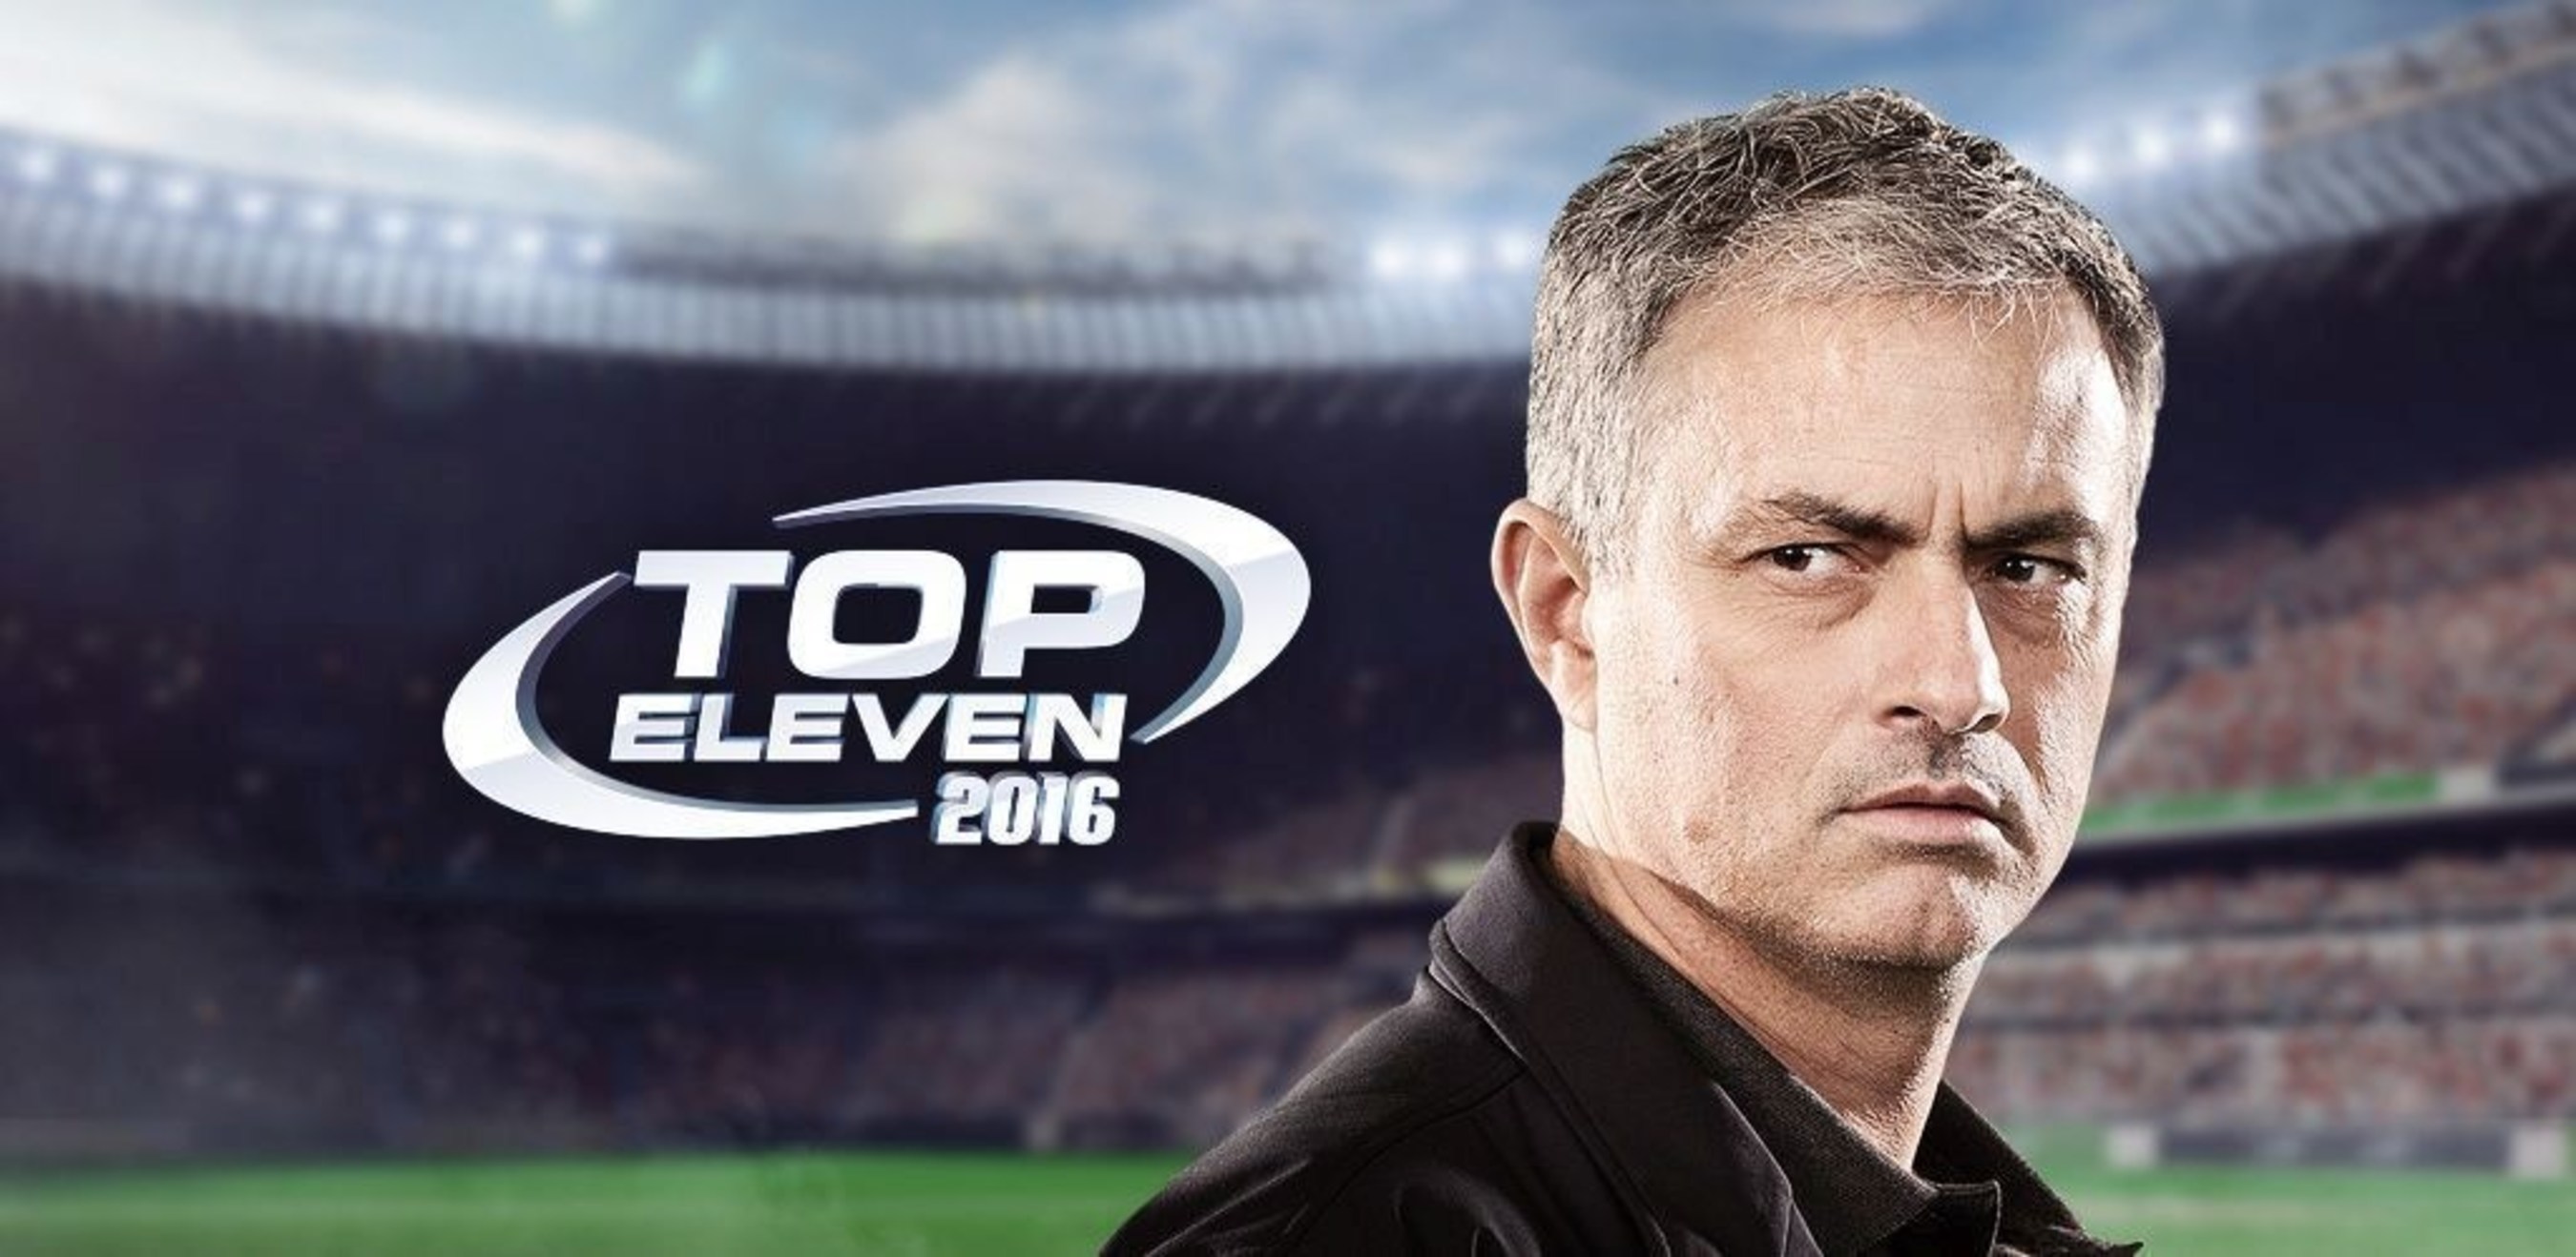 José Mourinho Returns to the for Top Eleven